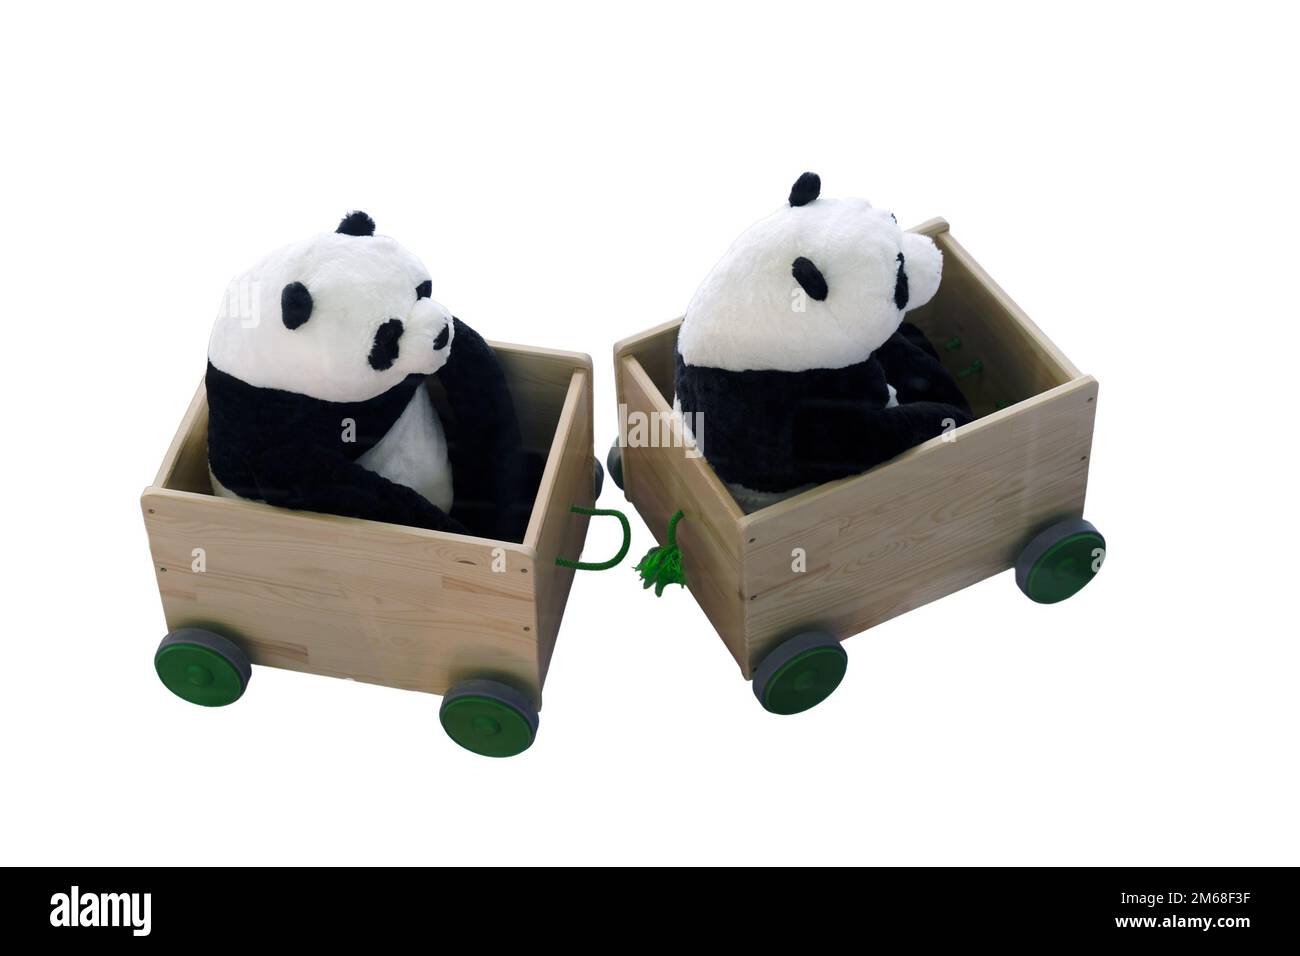 Spielzeug-Pandas fahren in einem Eisenbahnwaggon, isoliert auf weißem Hintergrund. Pandas in Klappbrettern, isoliert auf weißem Hintergrund Stockfoto